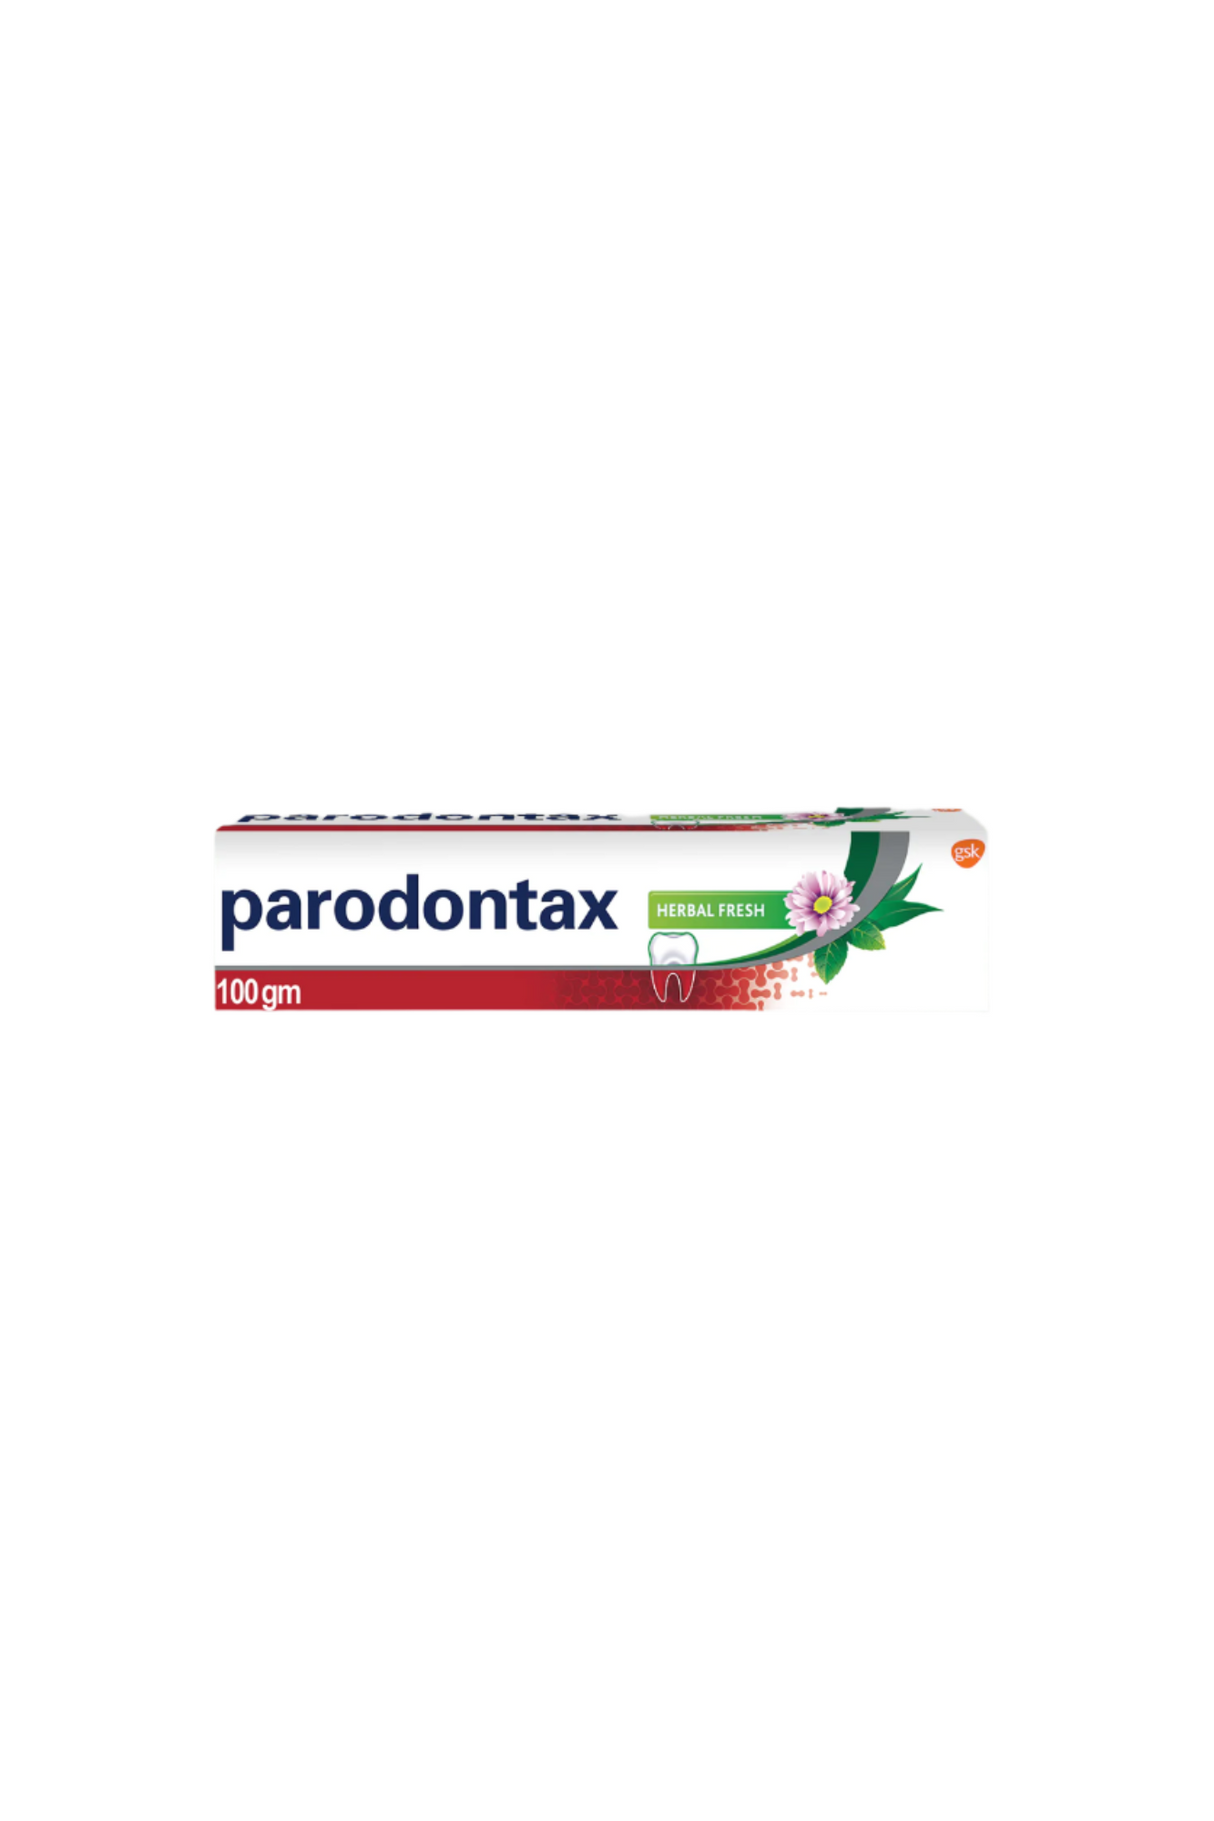 parodontax tooth paste herbal 100g